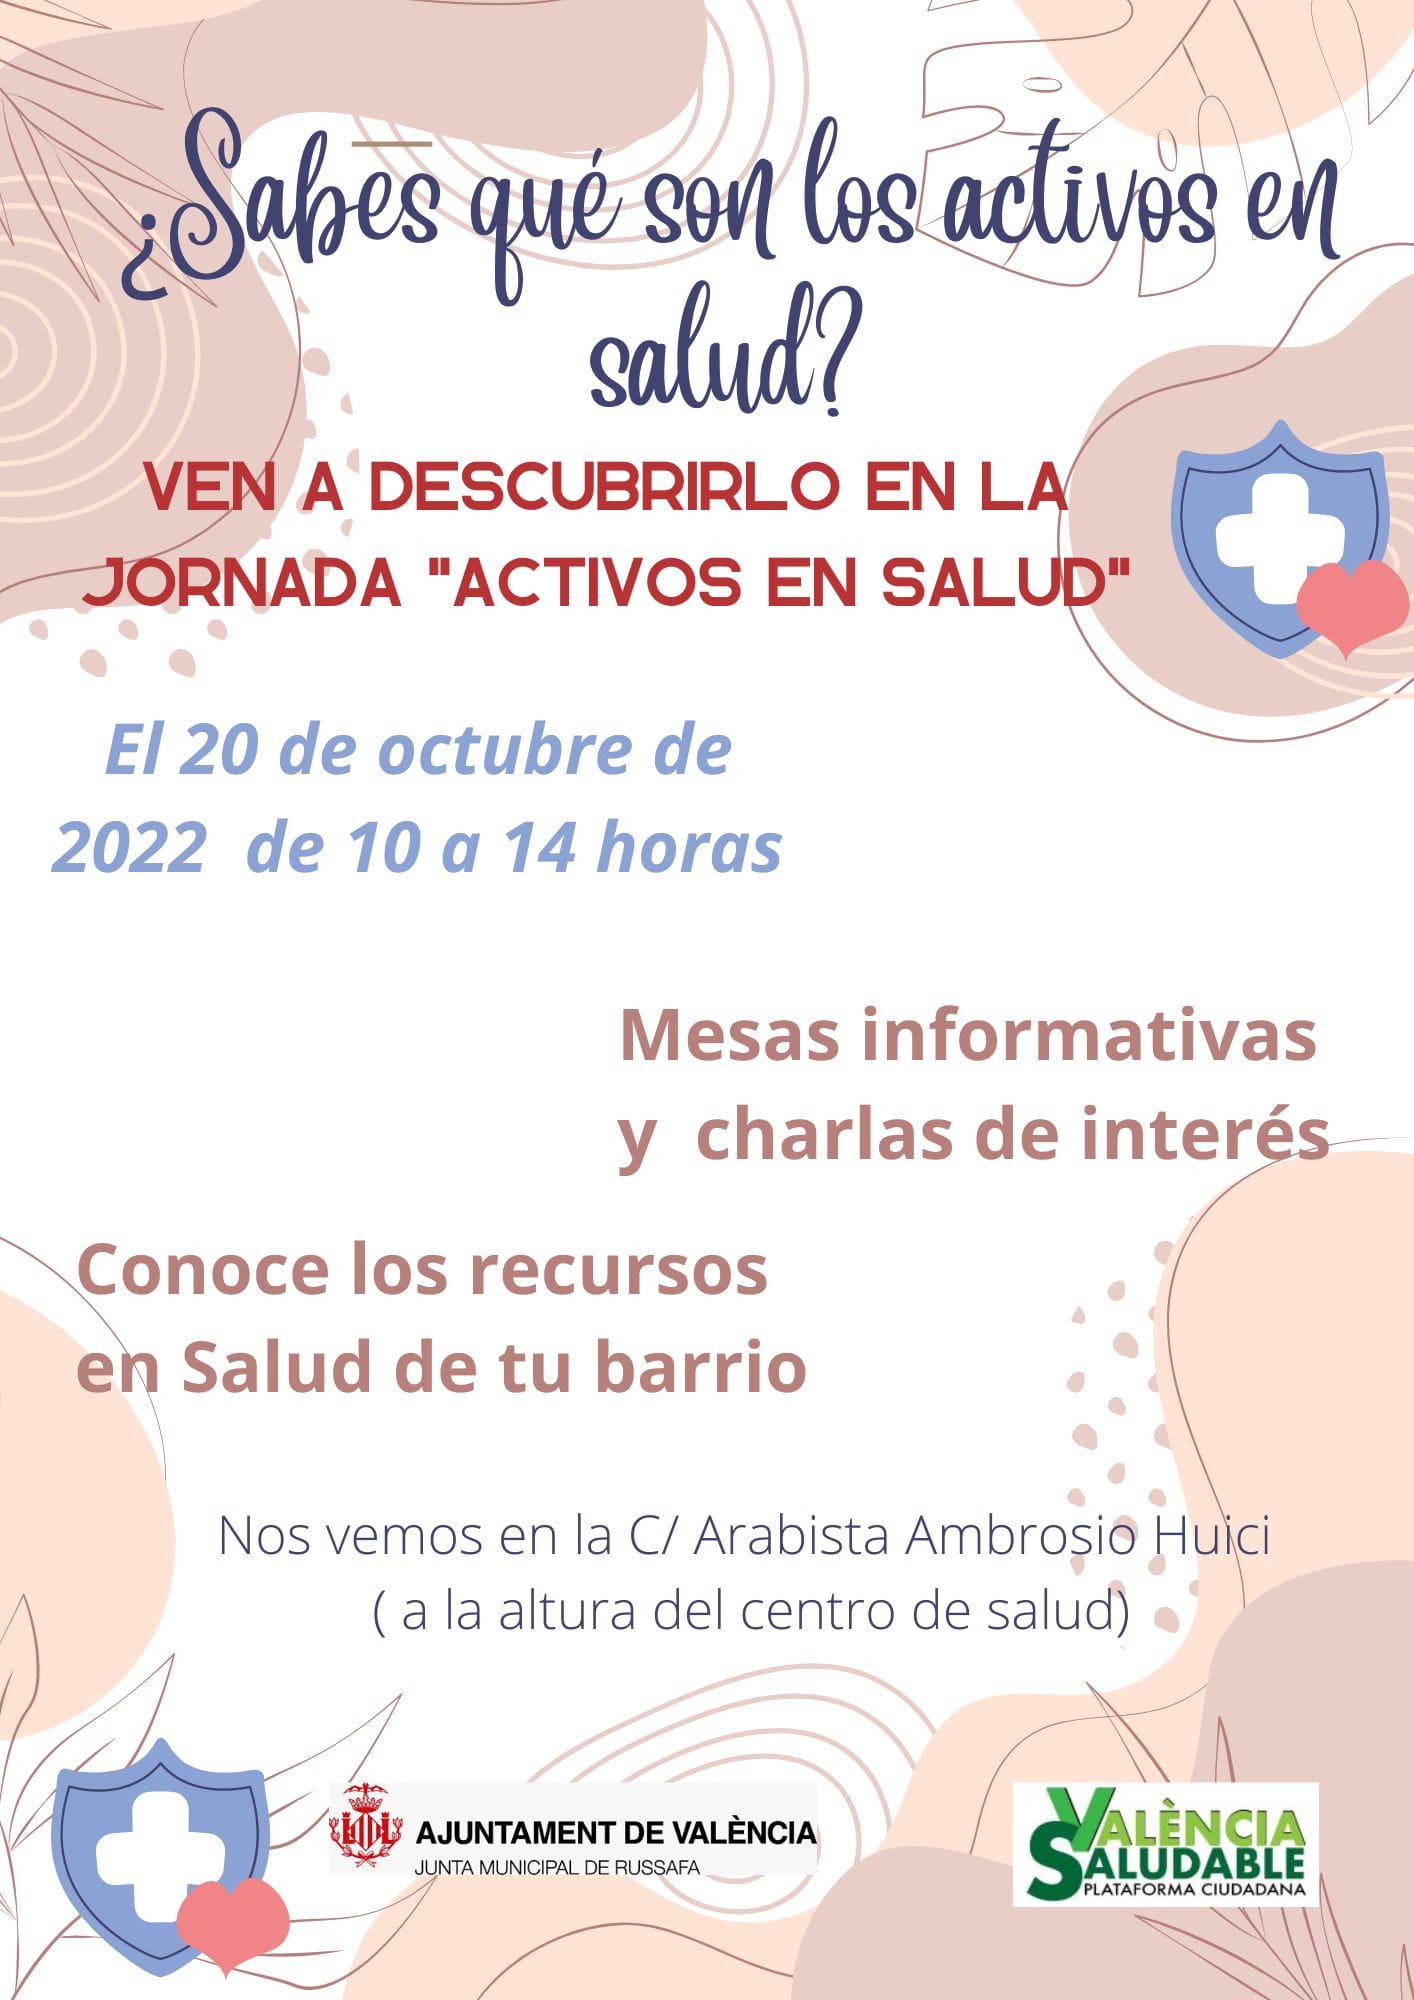 Cartel anunciador de la Jornada de Visibilización de Activos en Salud en castellano